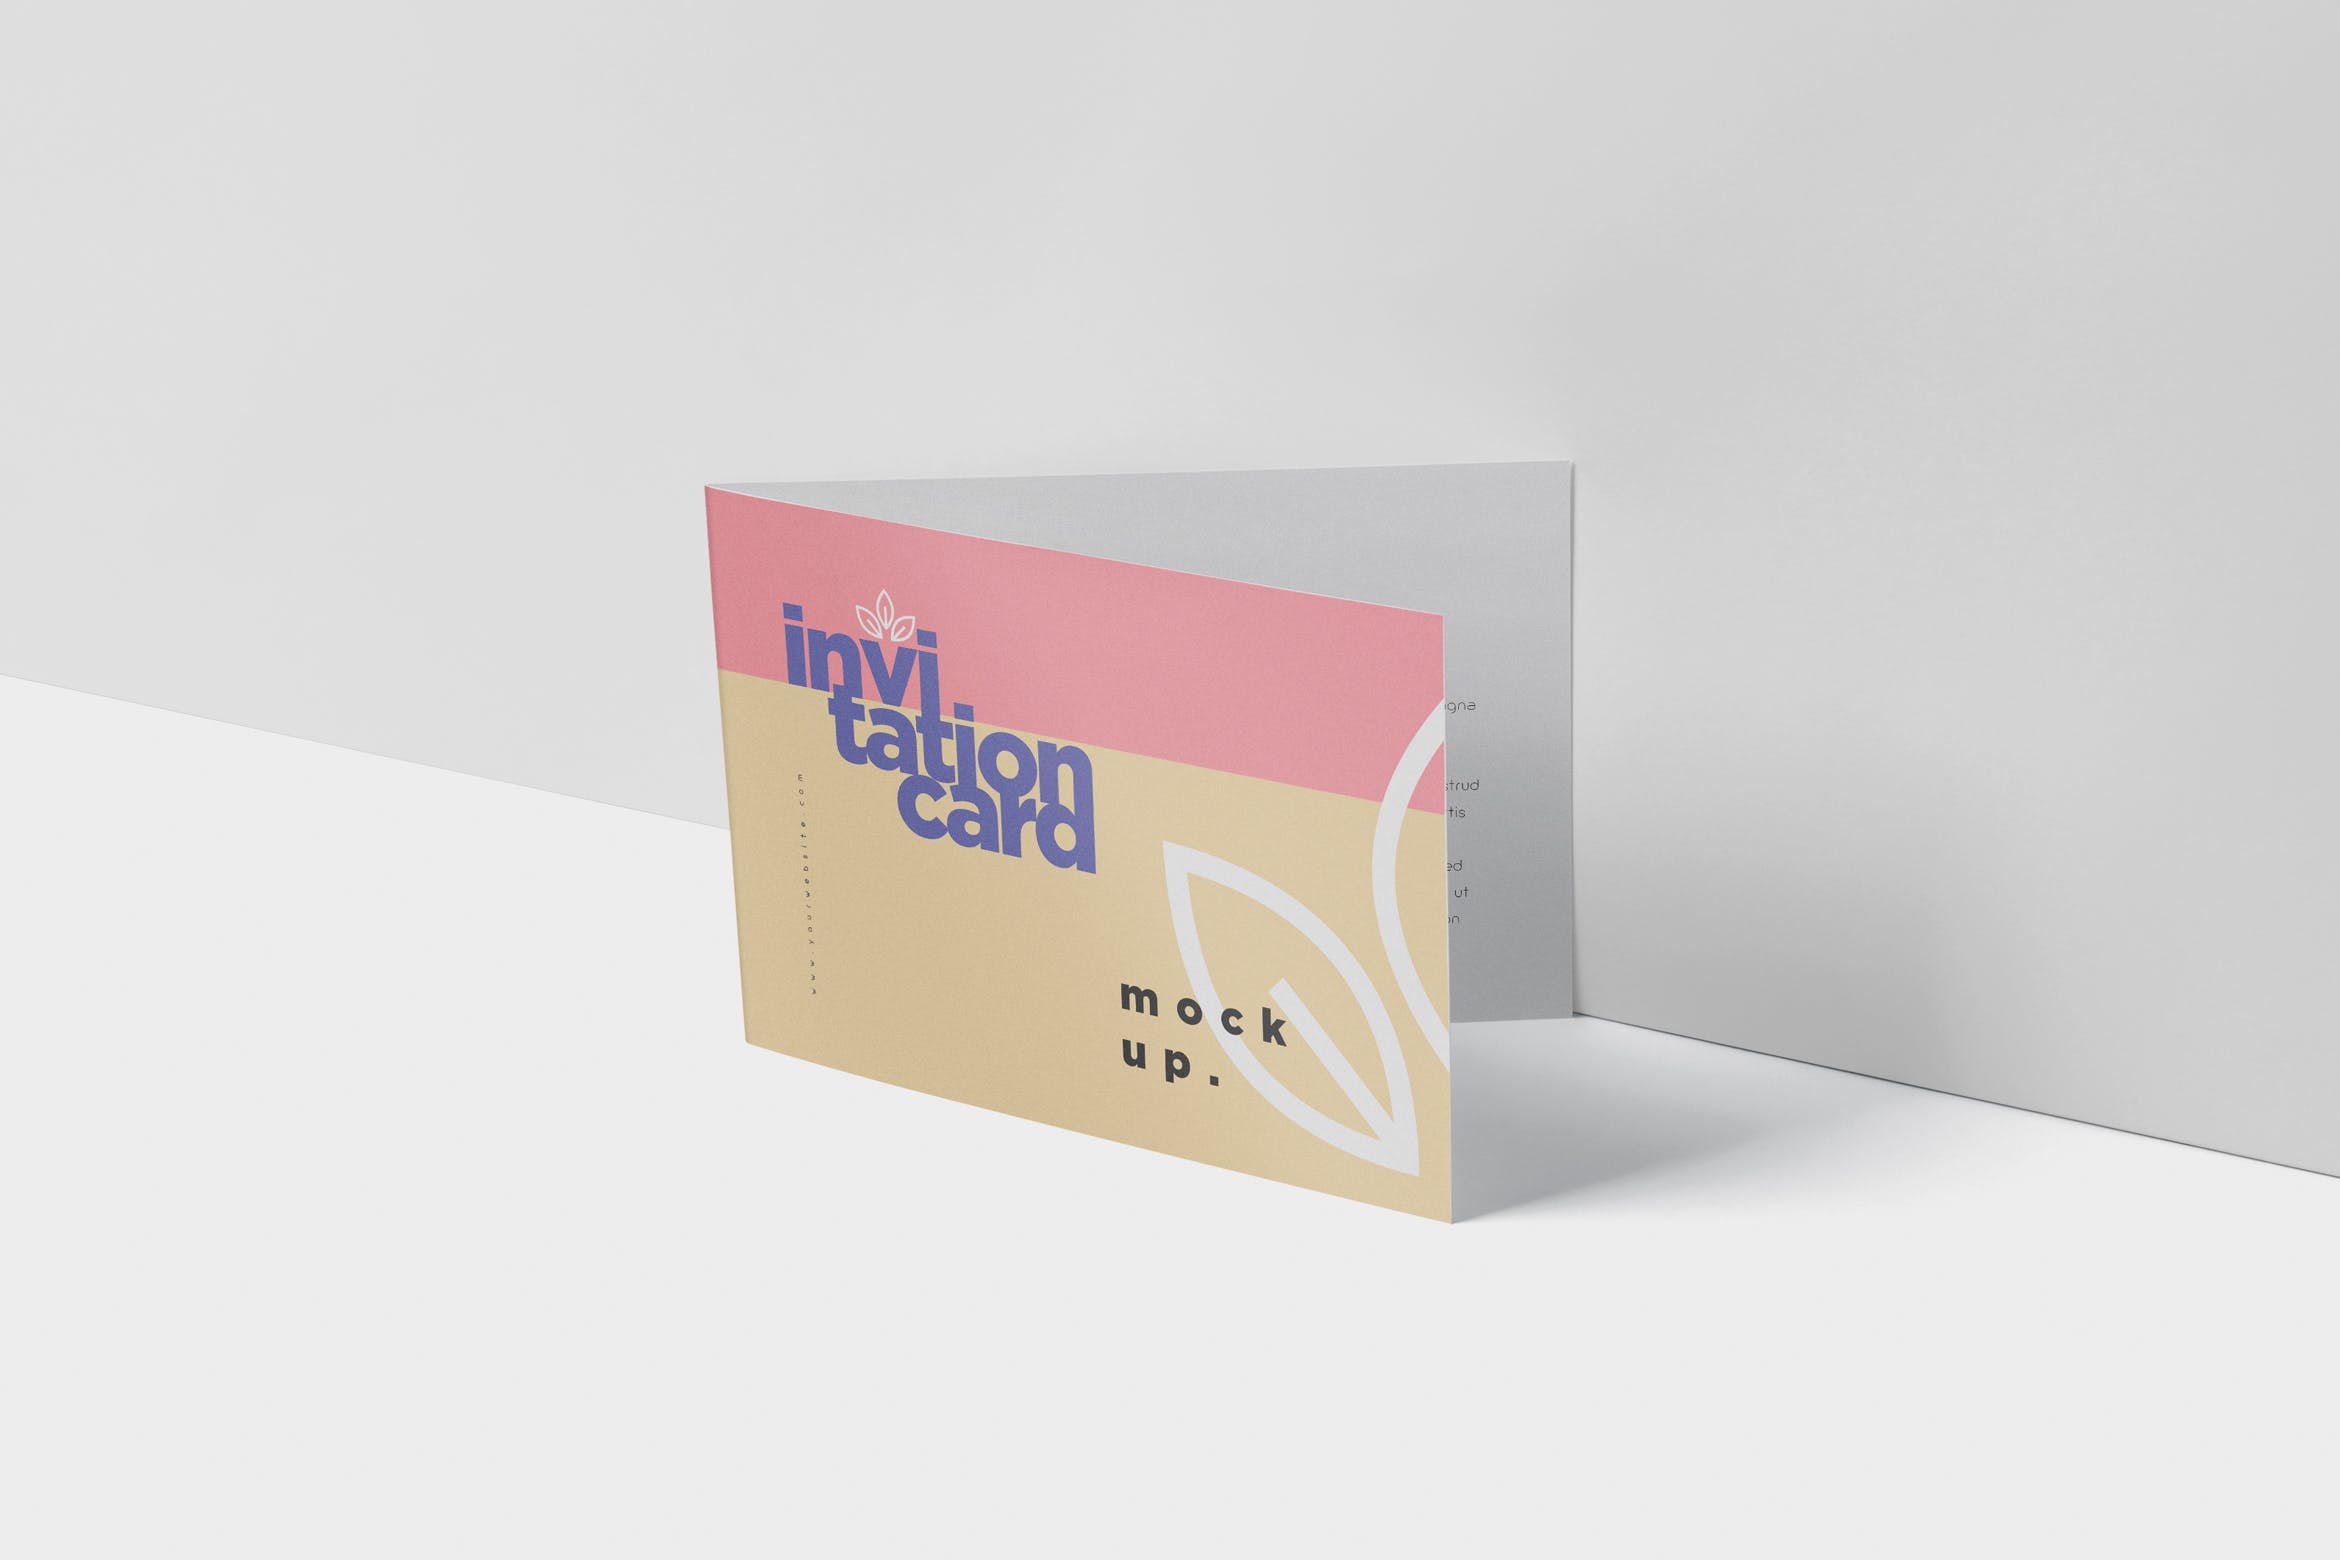 创意邀请卡/邀请函设计图样机蚂蚁素材精选 Invitation Card Mock-Up Set插图